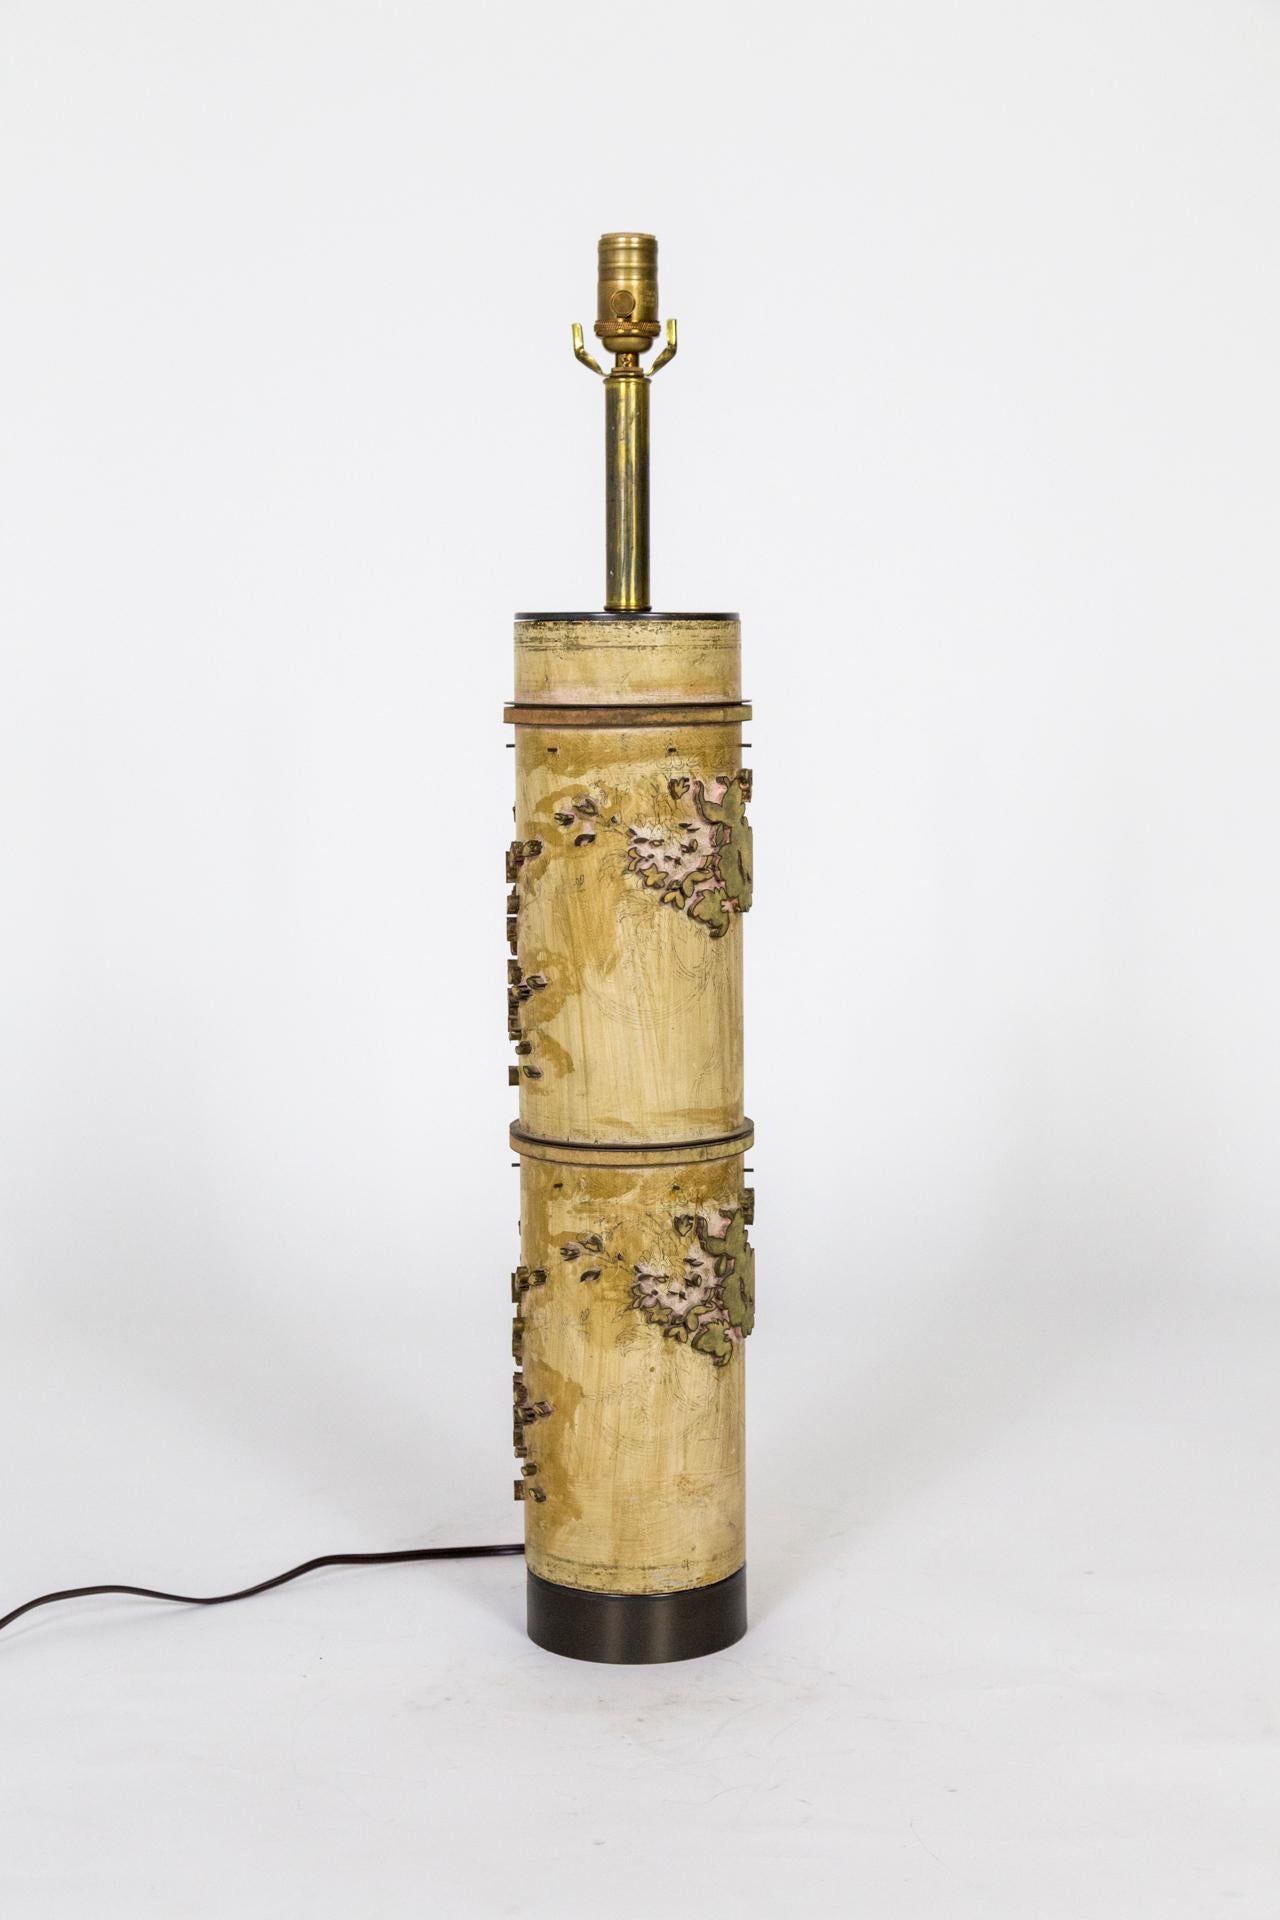 Une lampe fabriquée à partir d'un rouleau vintage pour l'impression de papier peint. Des motifs floraux aux détails uniques avec des marques intéressantes provenant du processus d'impression. Nouvellement transformée en lampe de table avec des